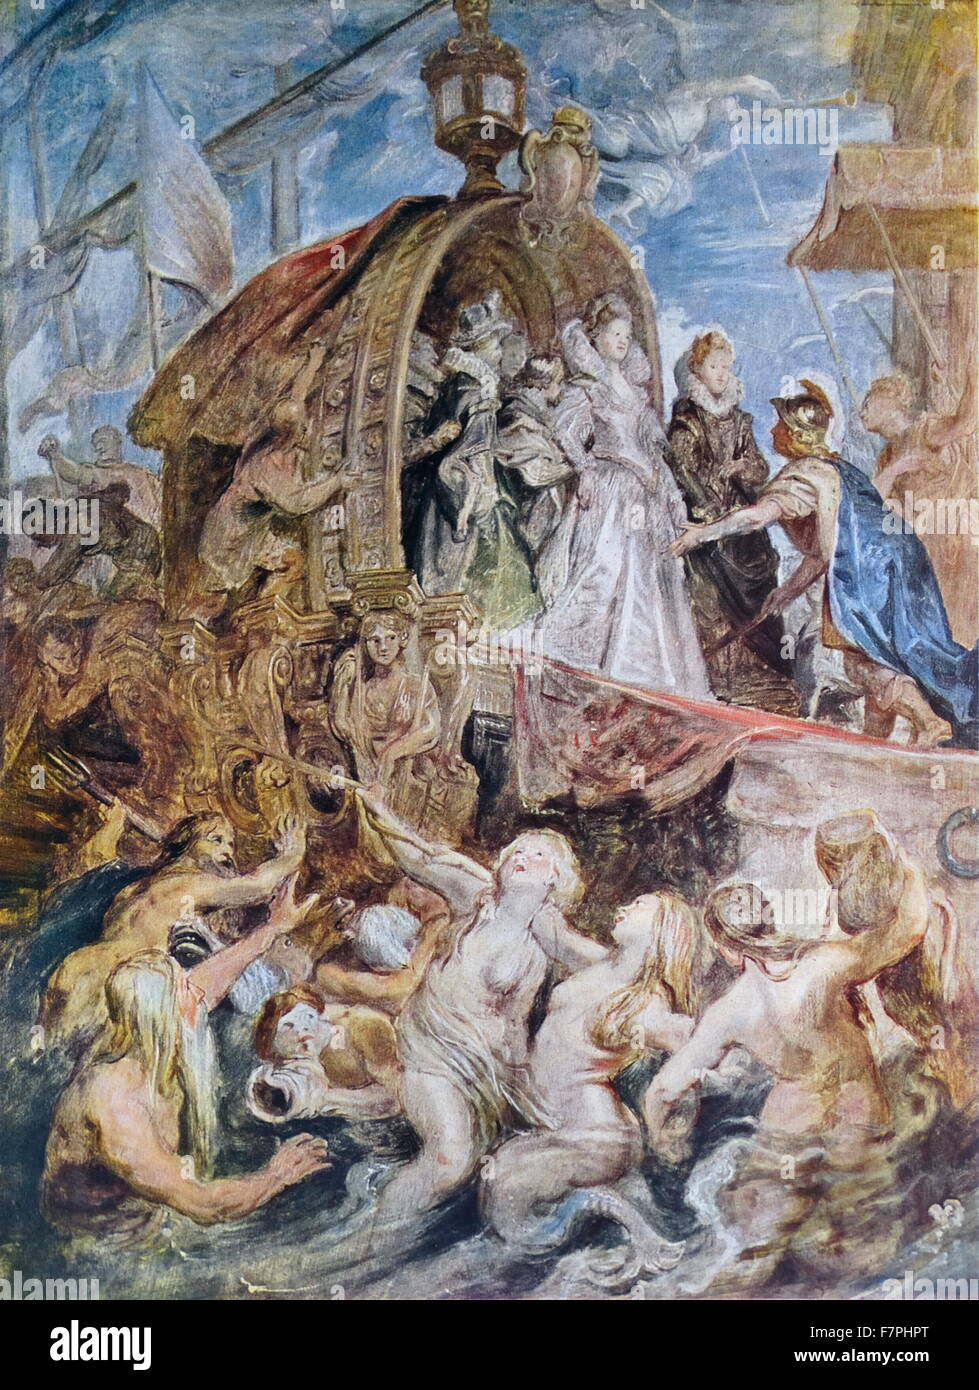 Gemälde mit dem Titel "Marie de Medicis, Königin von Frankreich, Landung in Marseille" von Rubens (1577-1640) flämischen Barock Maler. Vom 17. Jahrhundert Stockfoto